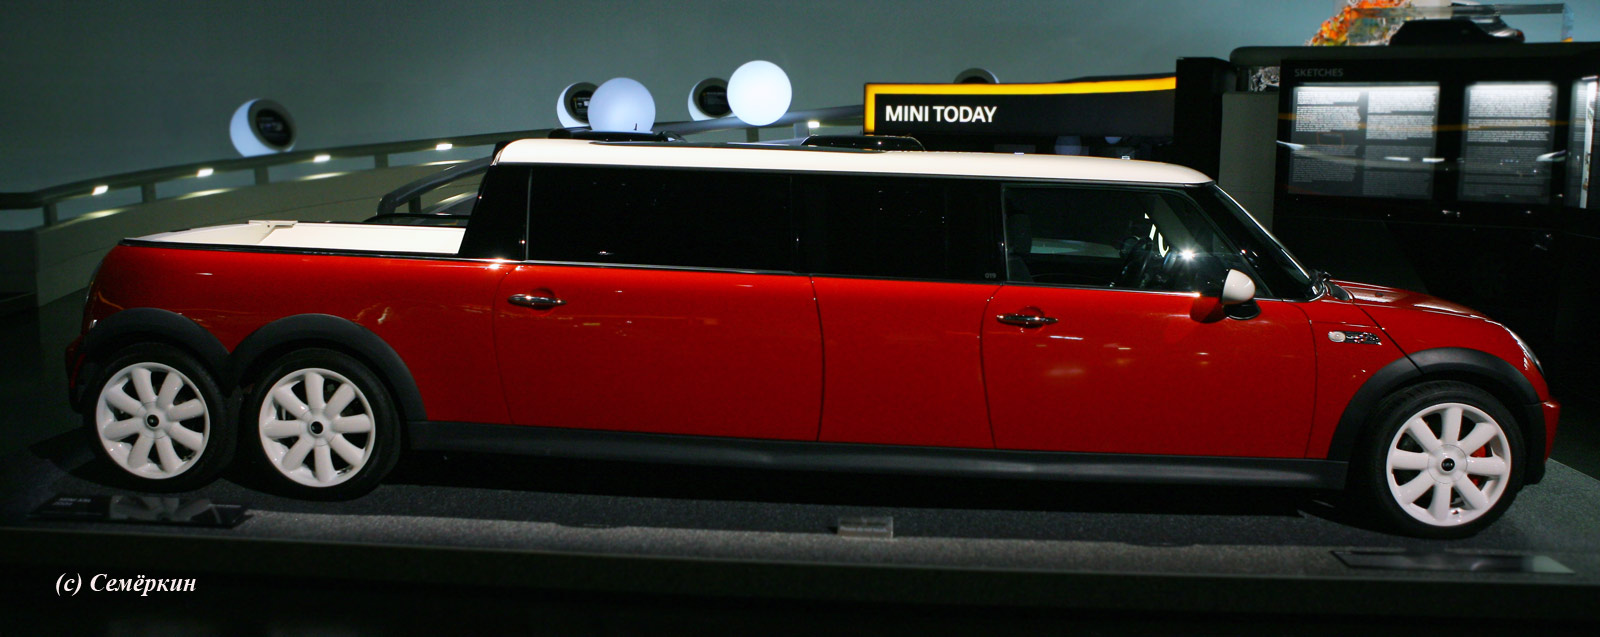 Музей BMW - лимузин Mini